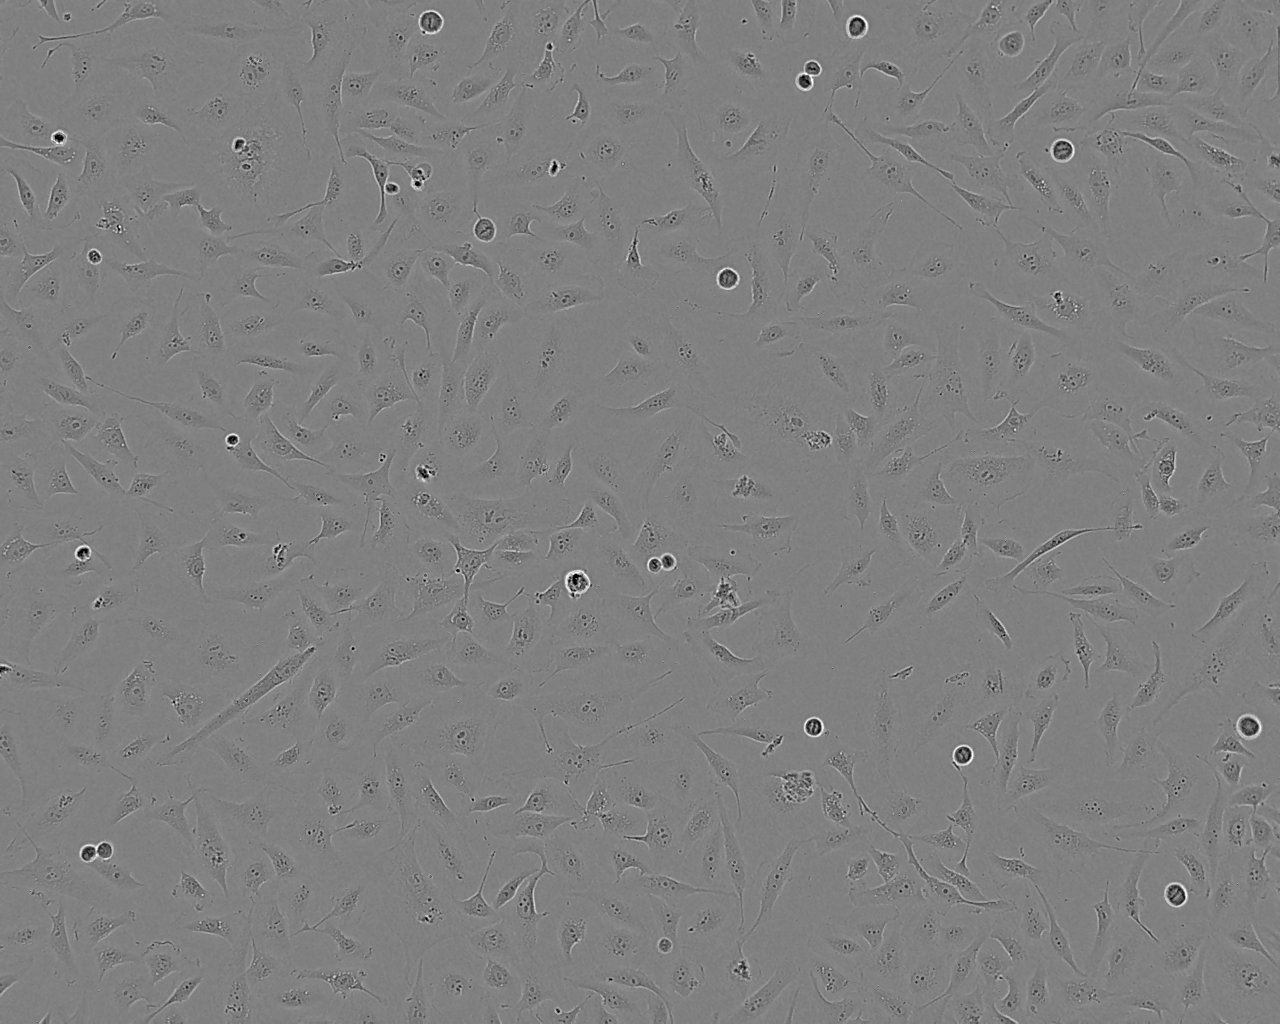 IPI-2I epithelioid cells猪回肠上皮细胞系,IPI-2I epithelioid cells